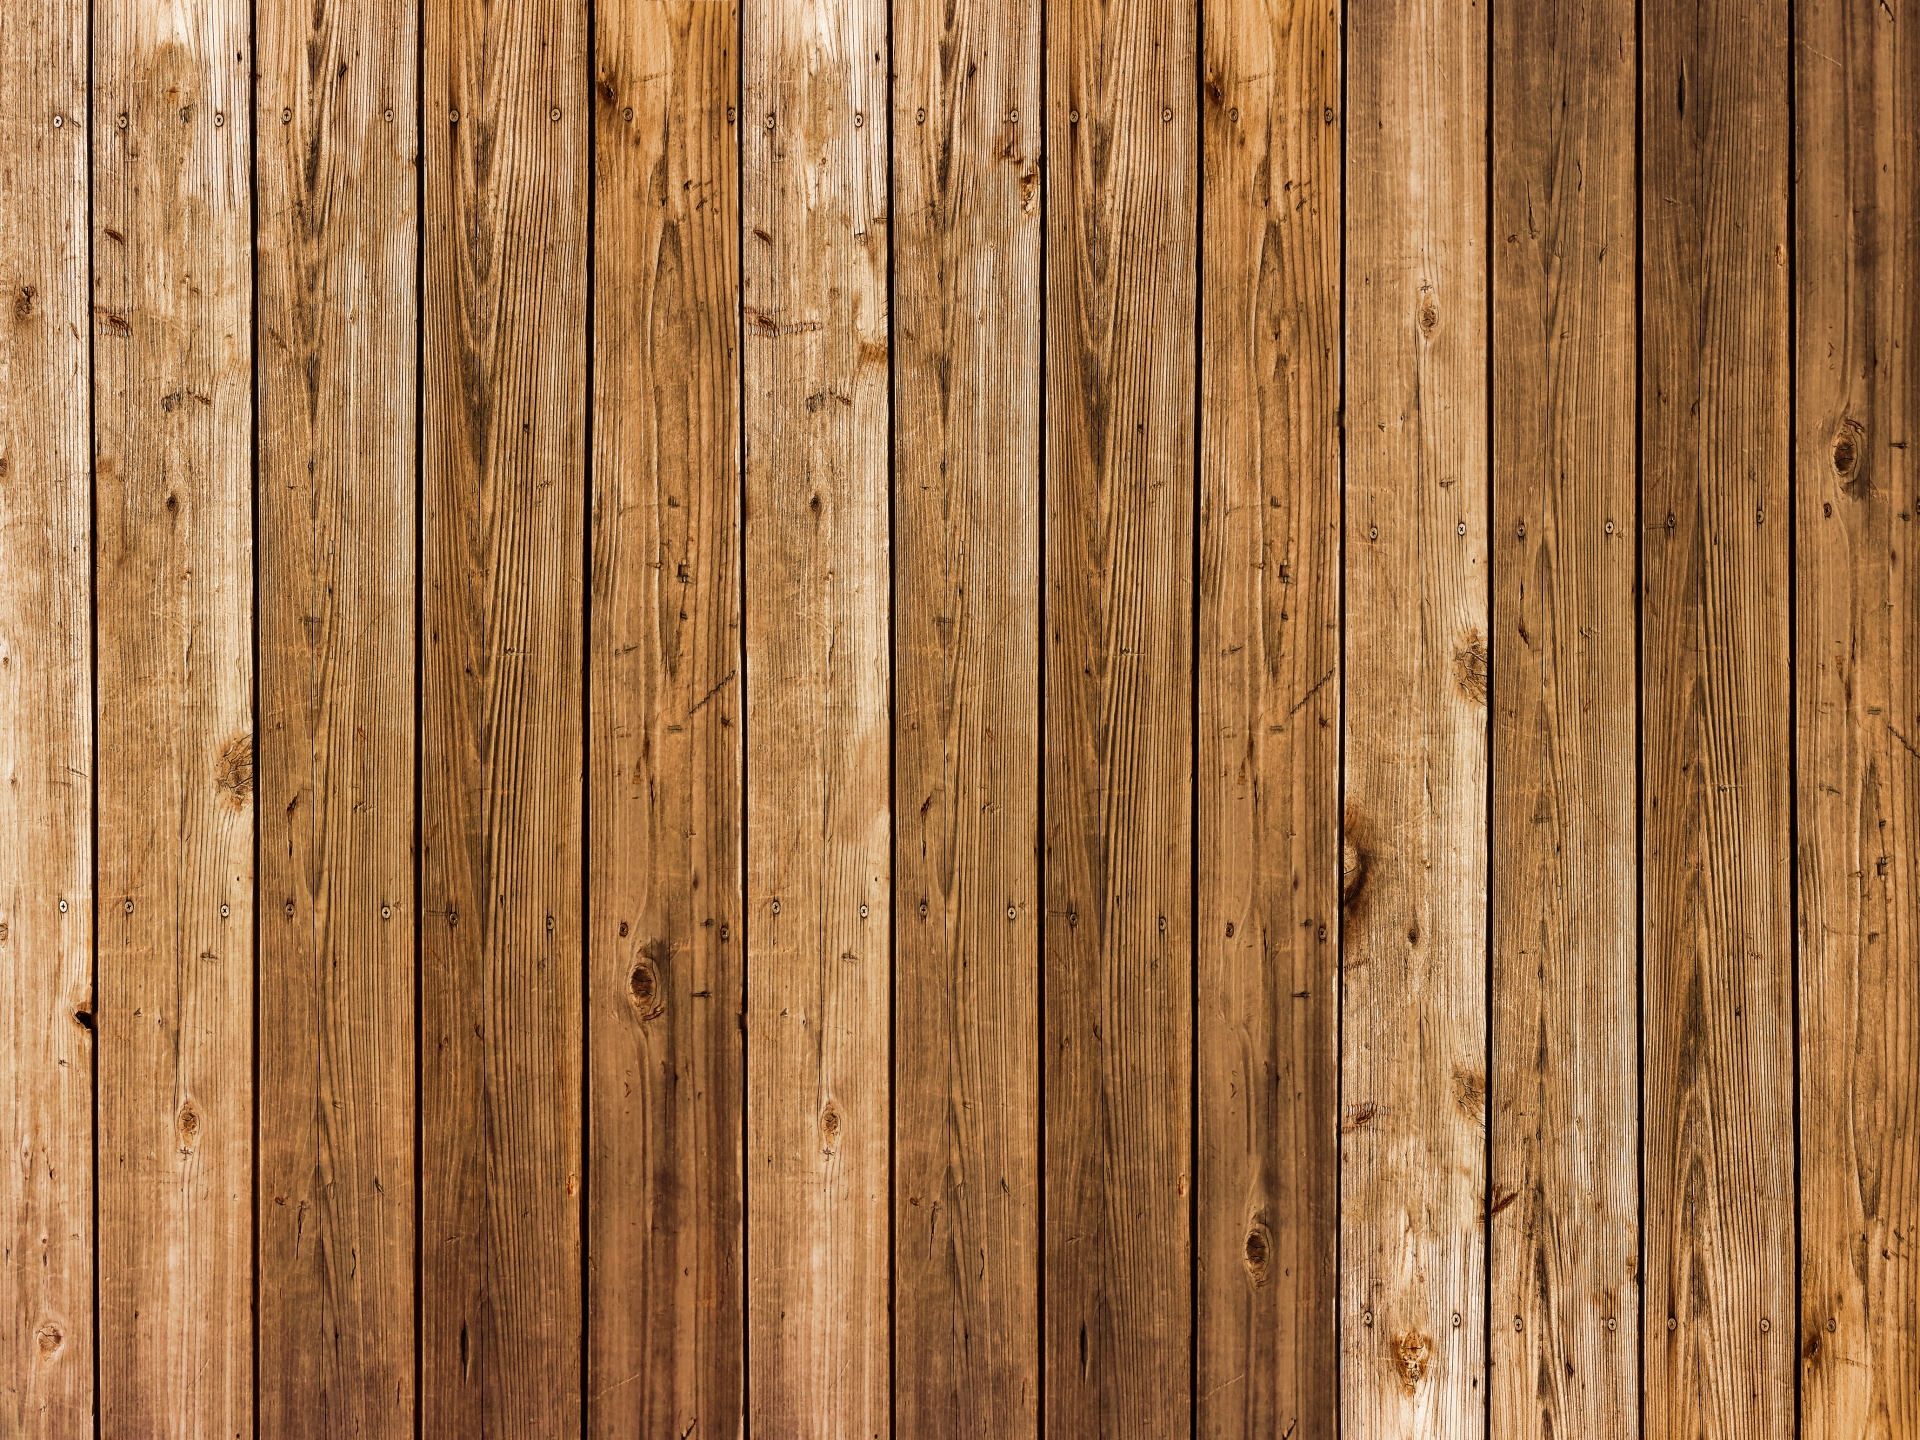 壁材料の種類・クロス・木材・塗壁の特徴やメリットとデメリット